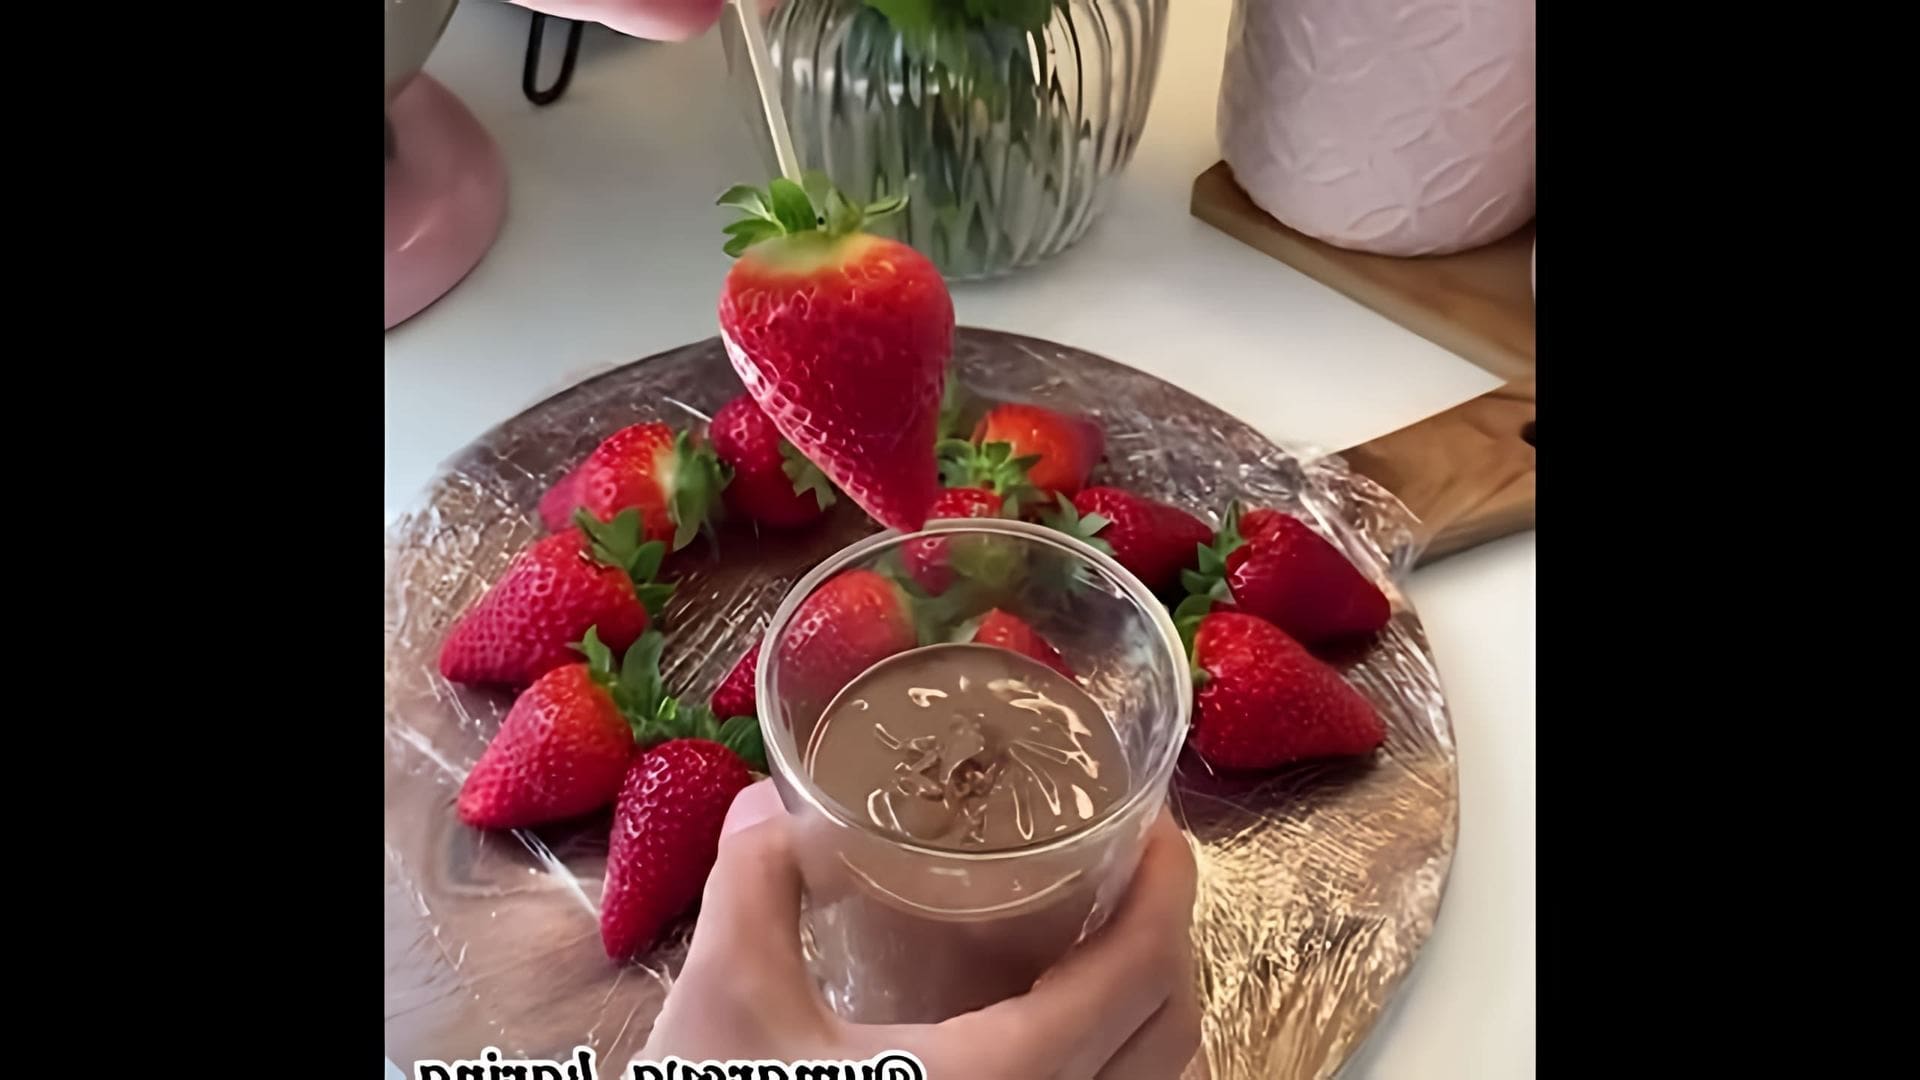 В этом видео демонстрируется процесс приготовления клубники в шоколаде